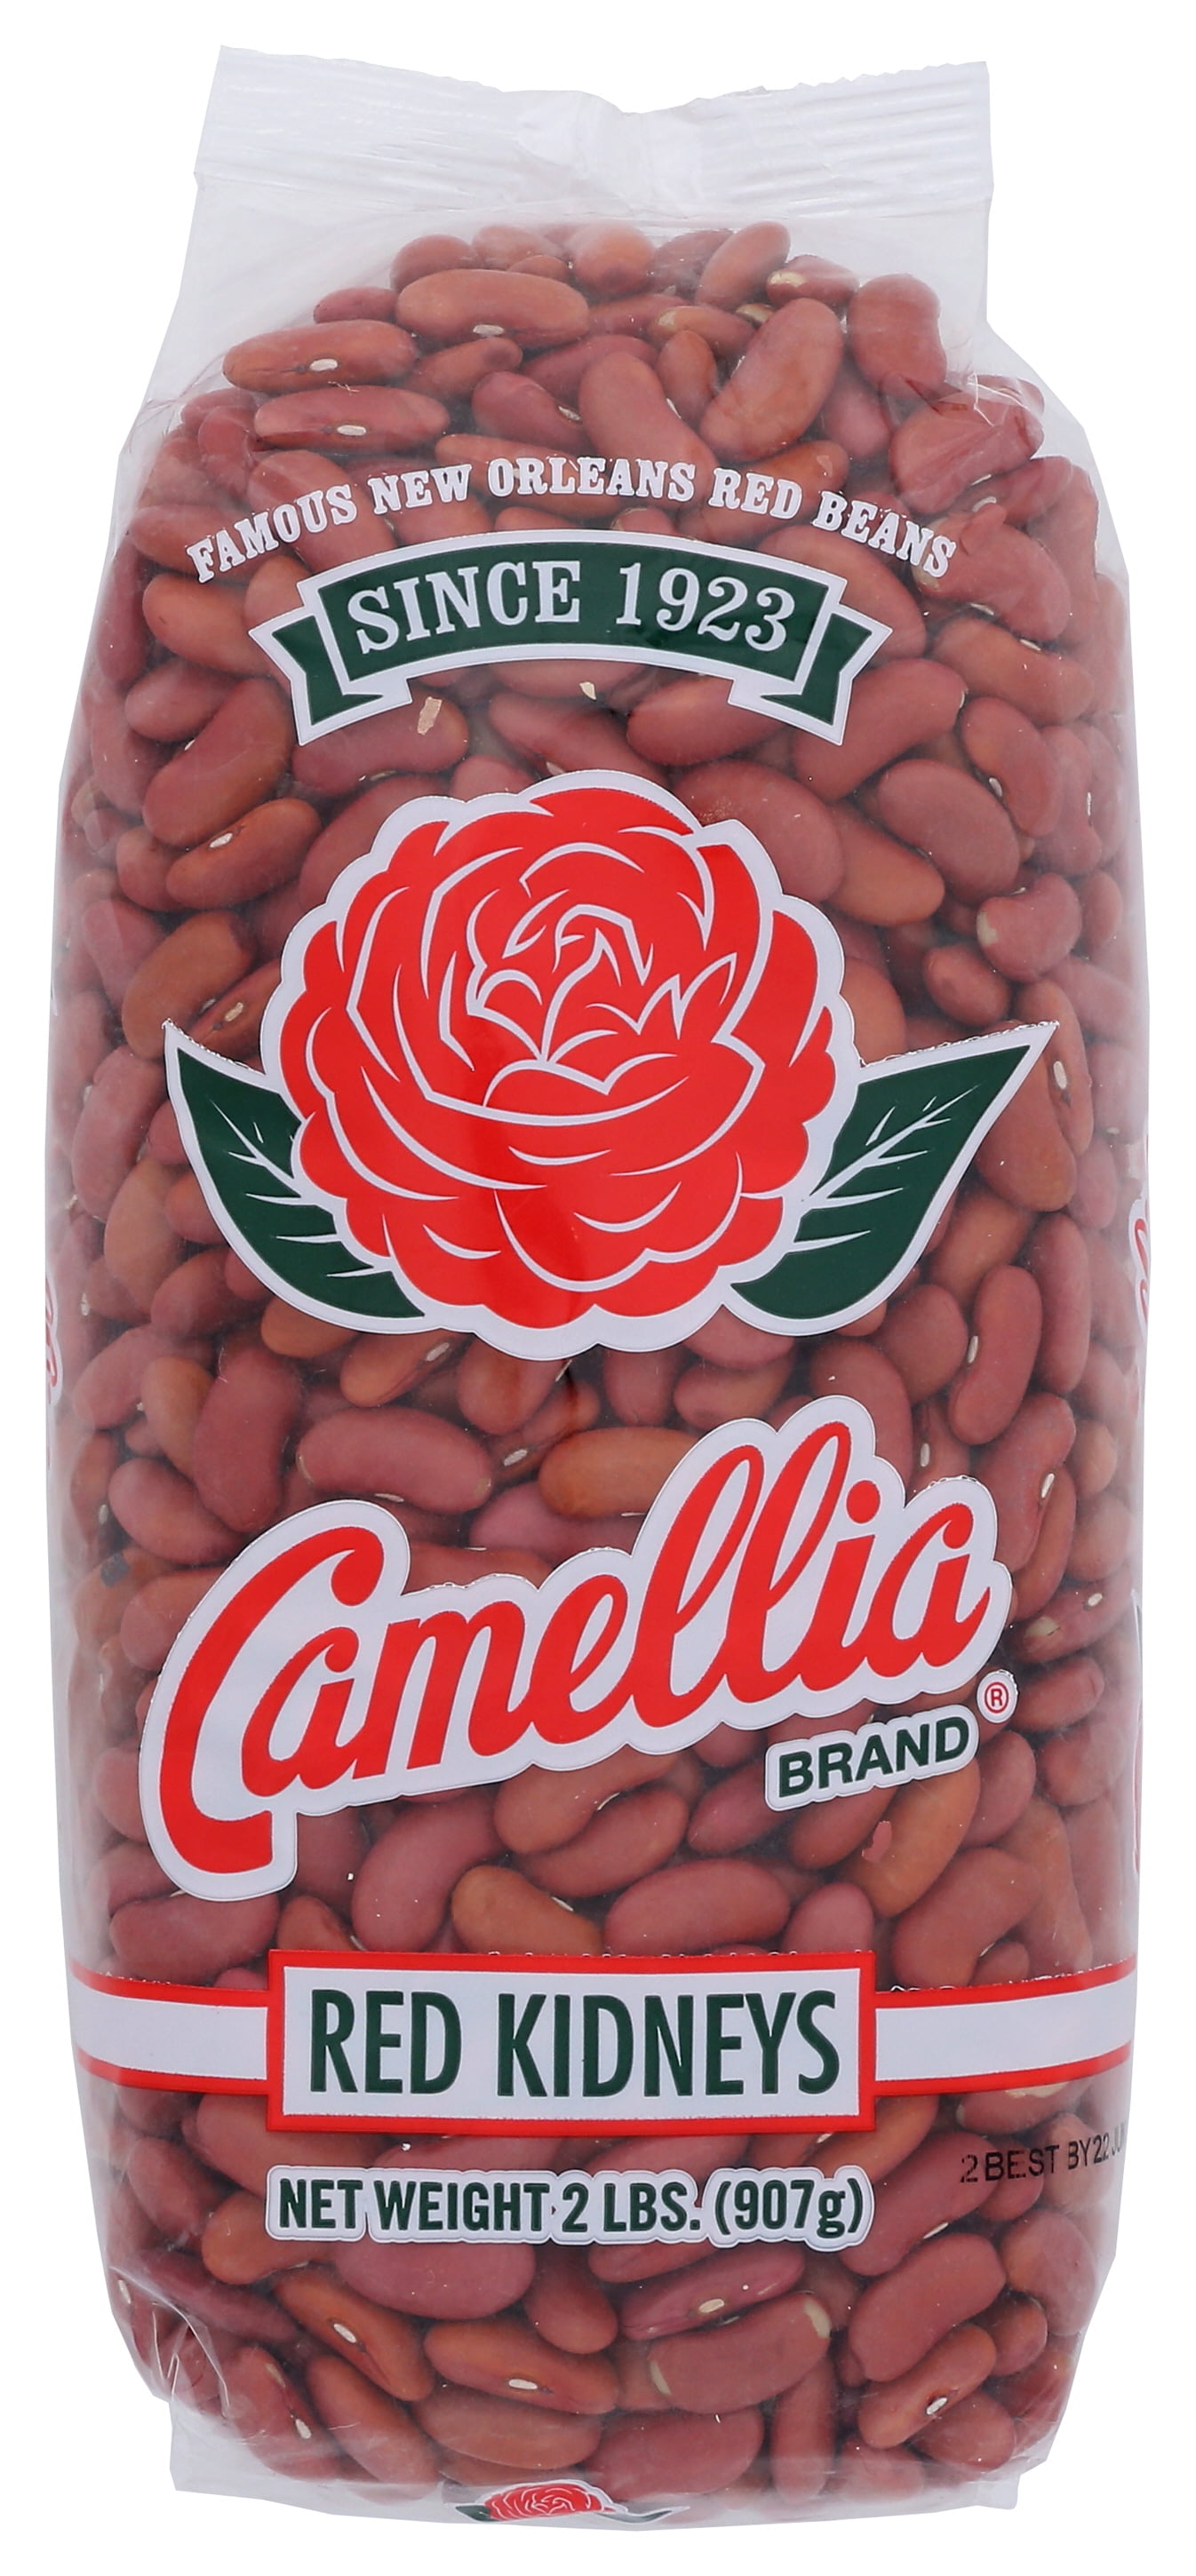 Camellia's Signature Red Beans